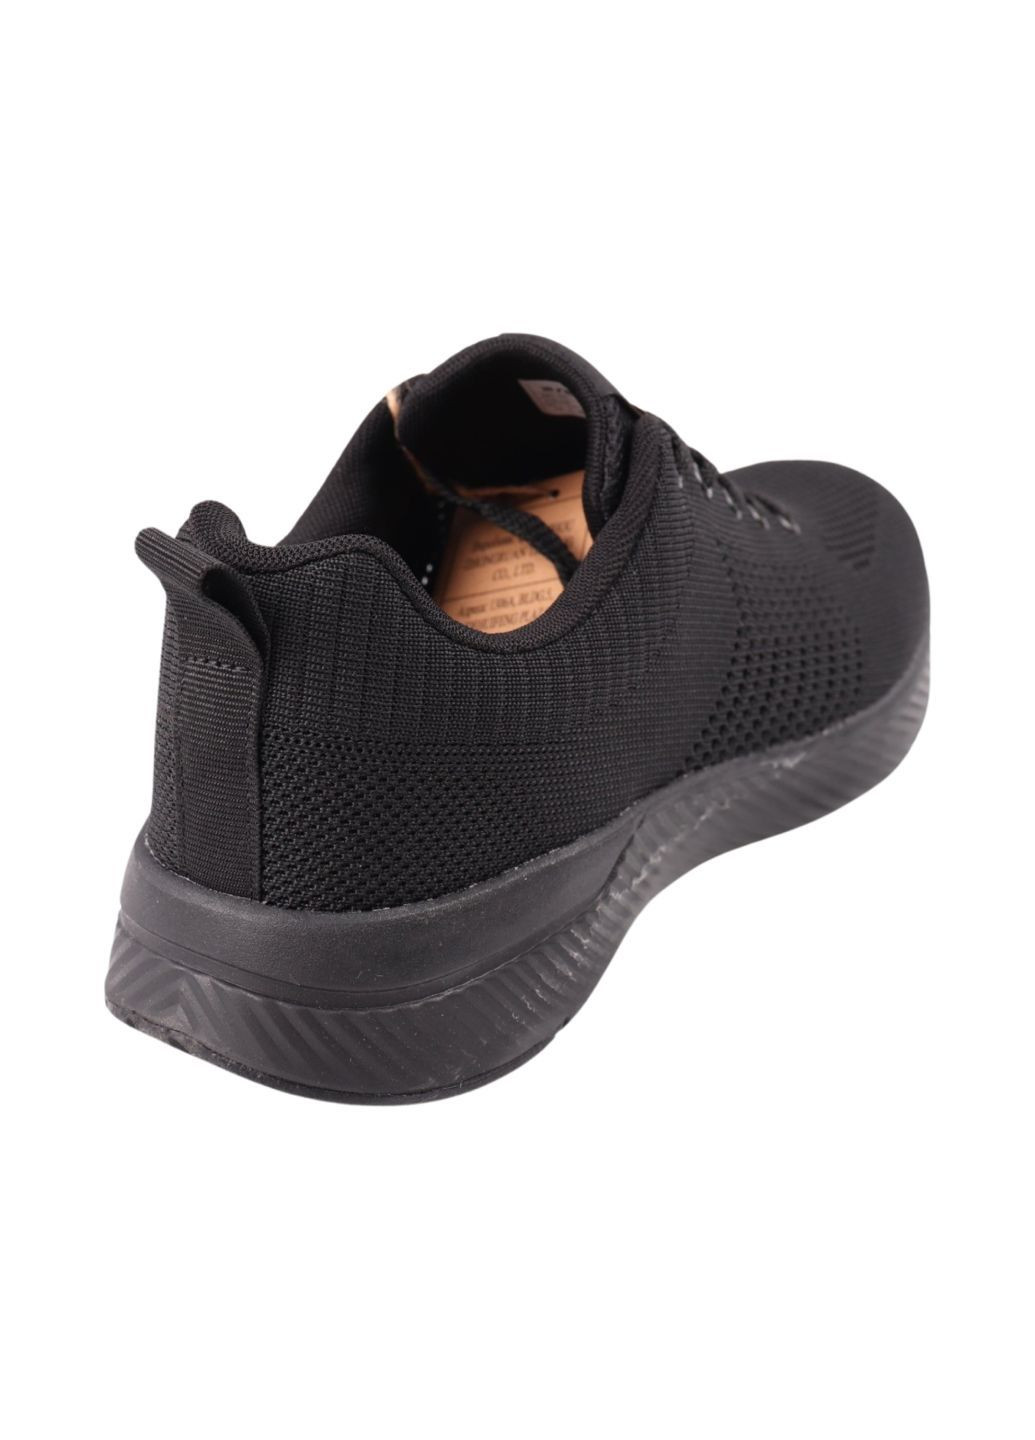 Черные кроссовки мужские черные текстиль Restime 263-24LK